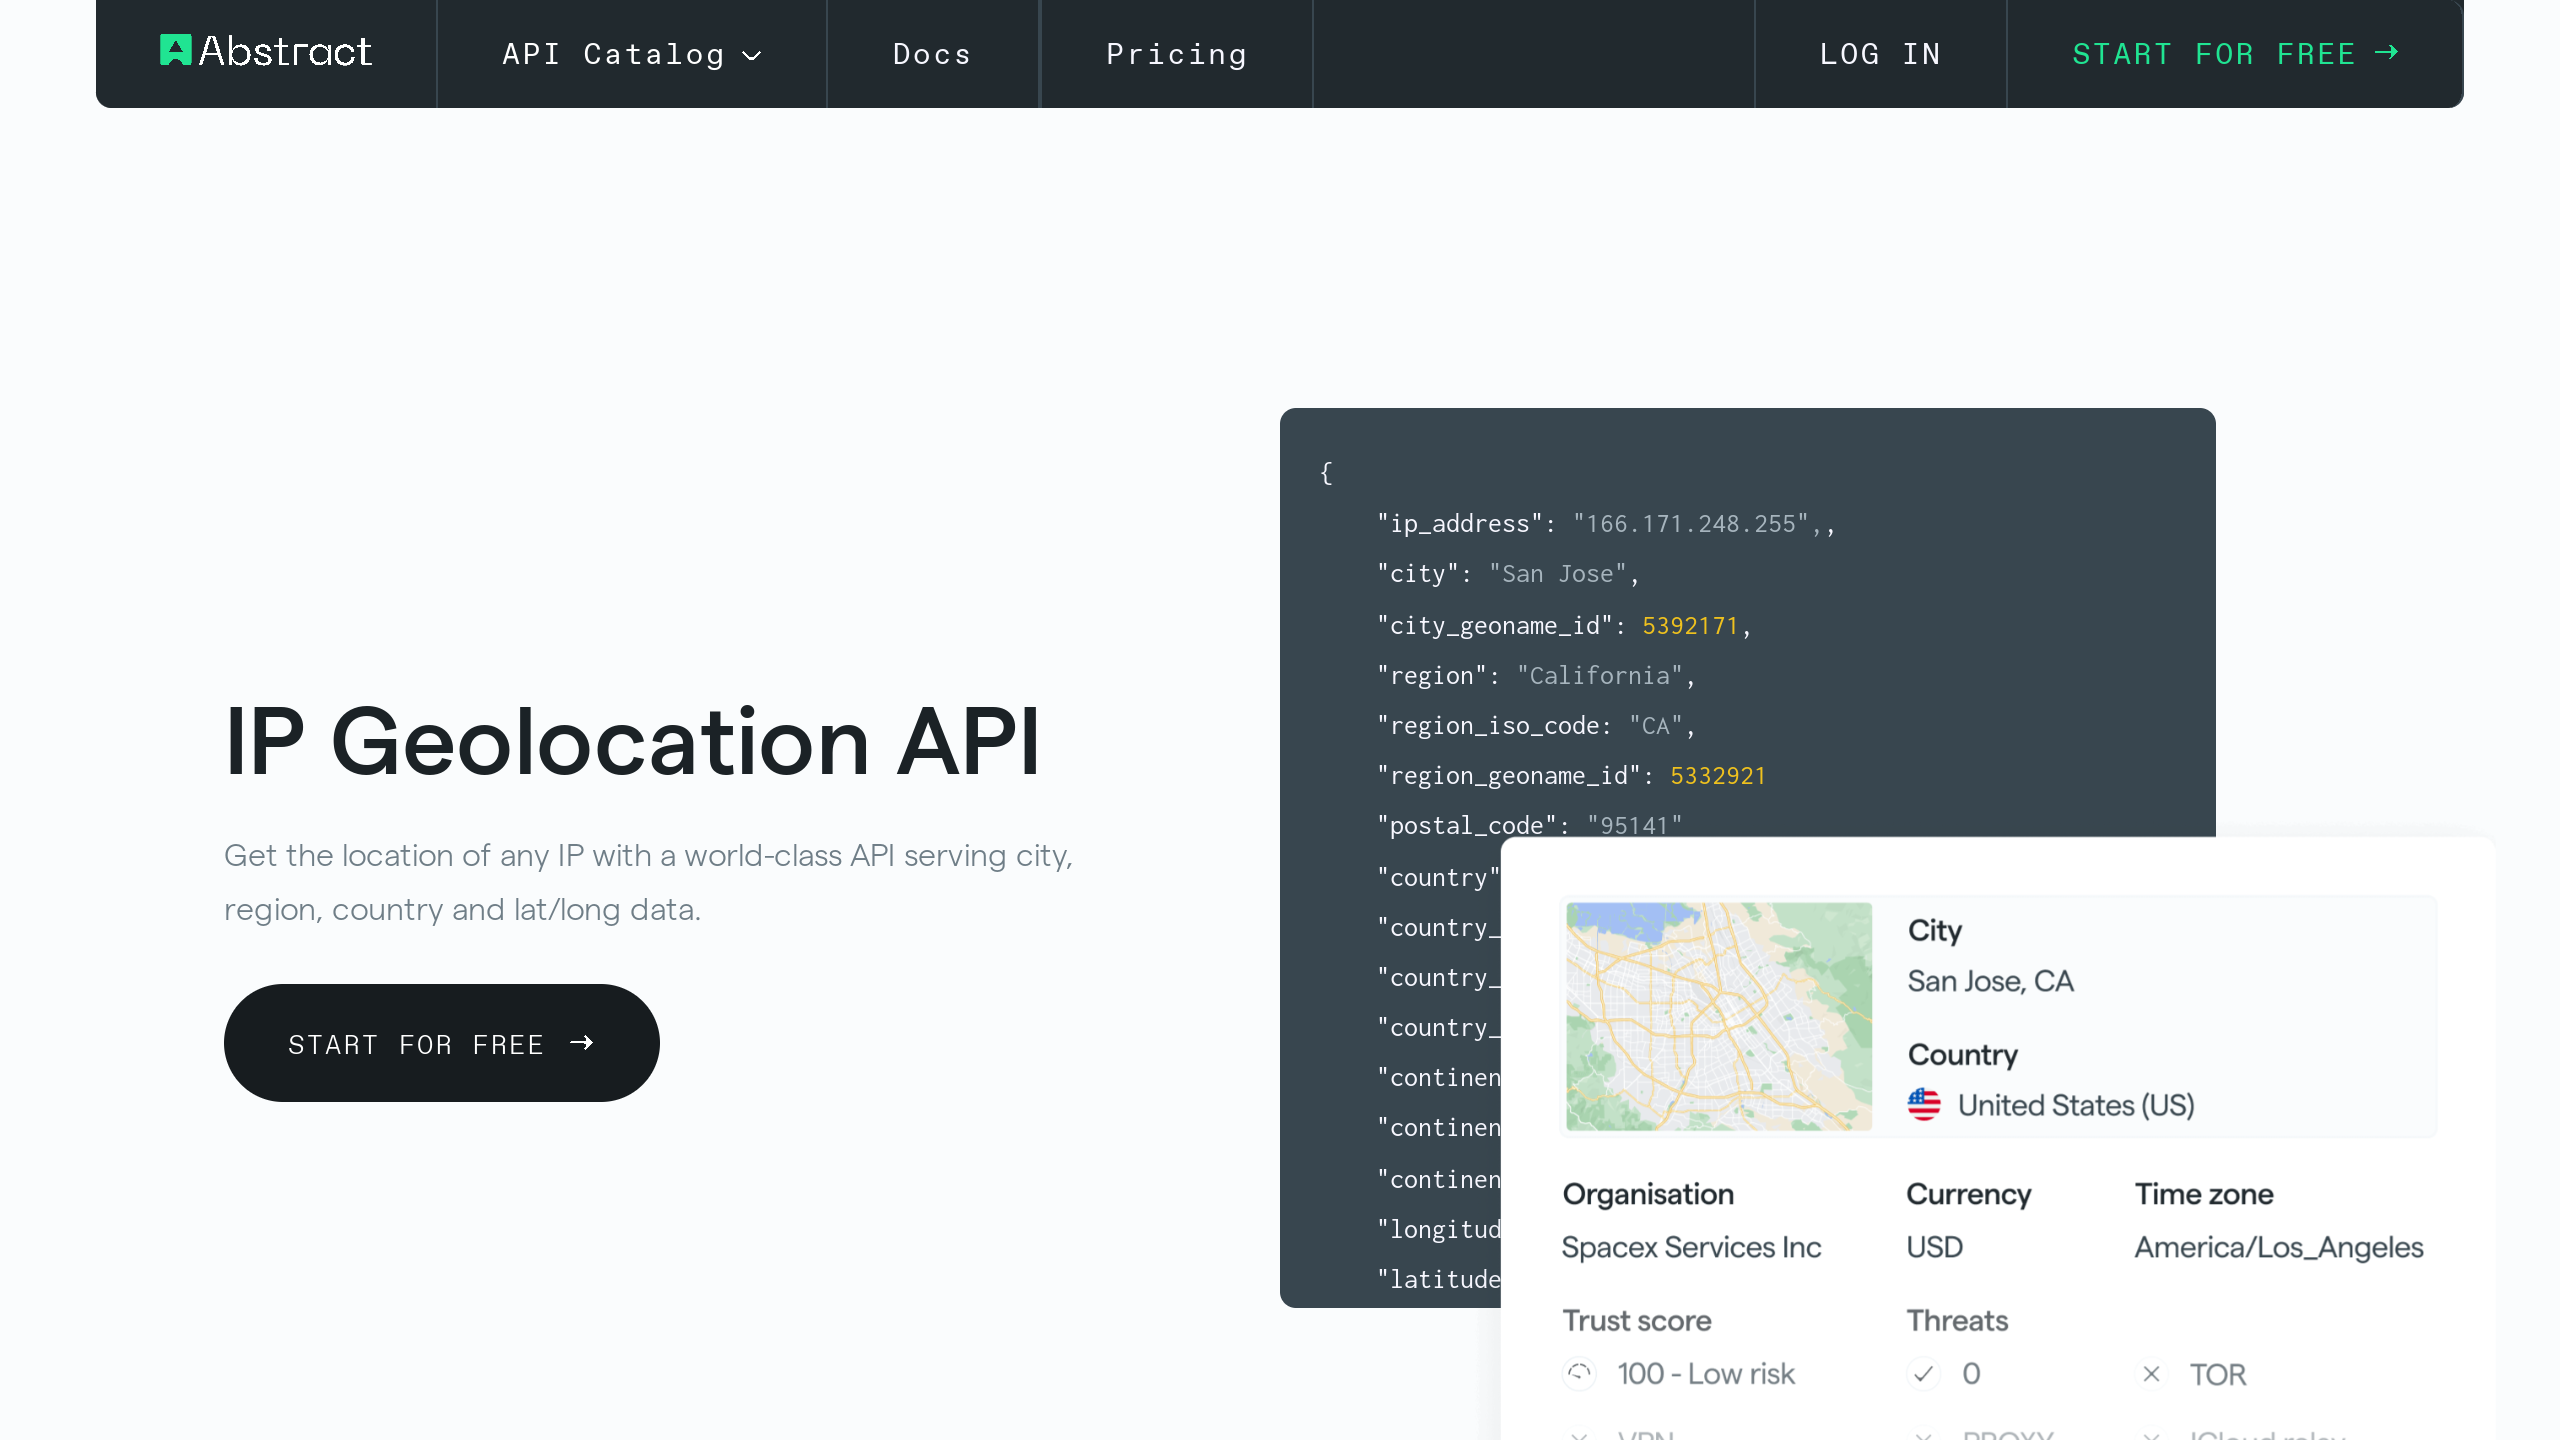 Abstract IP Geolocation's website screenshot